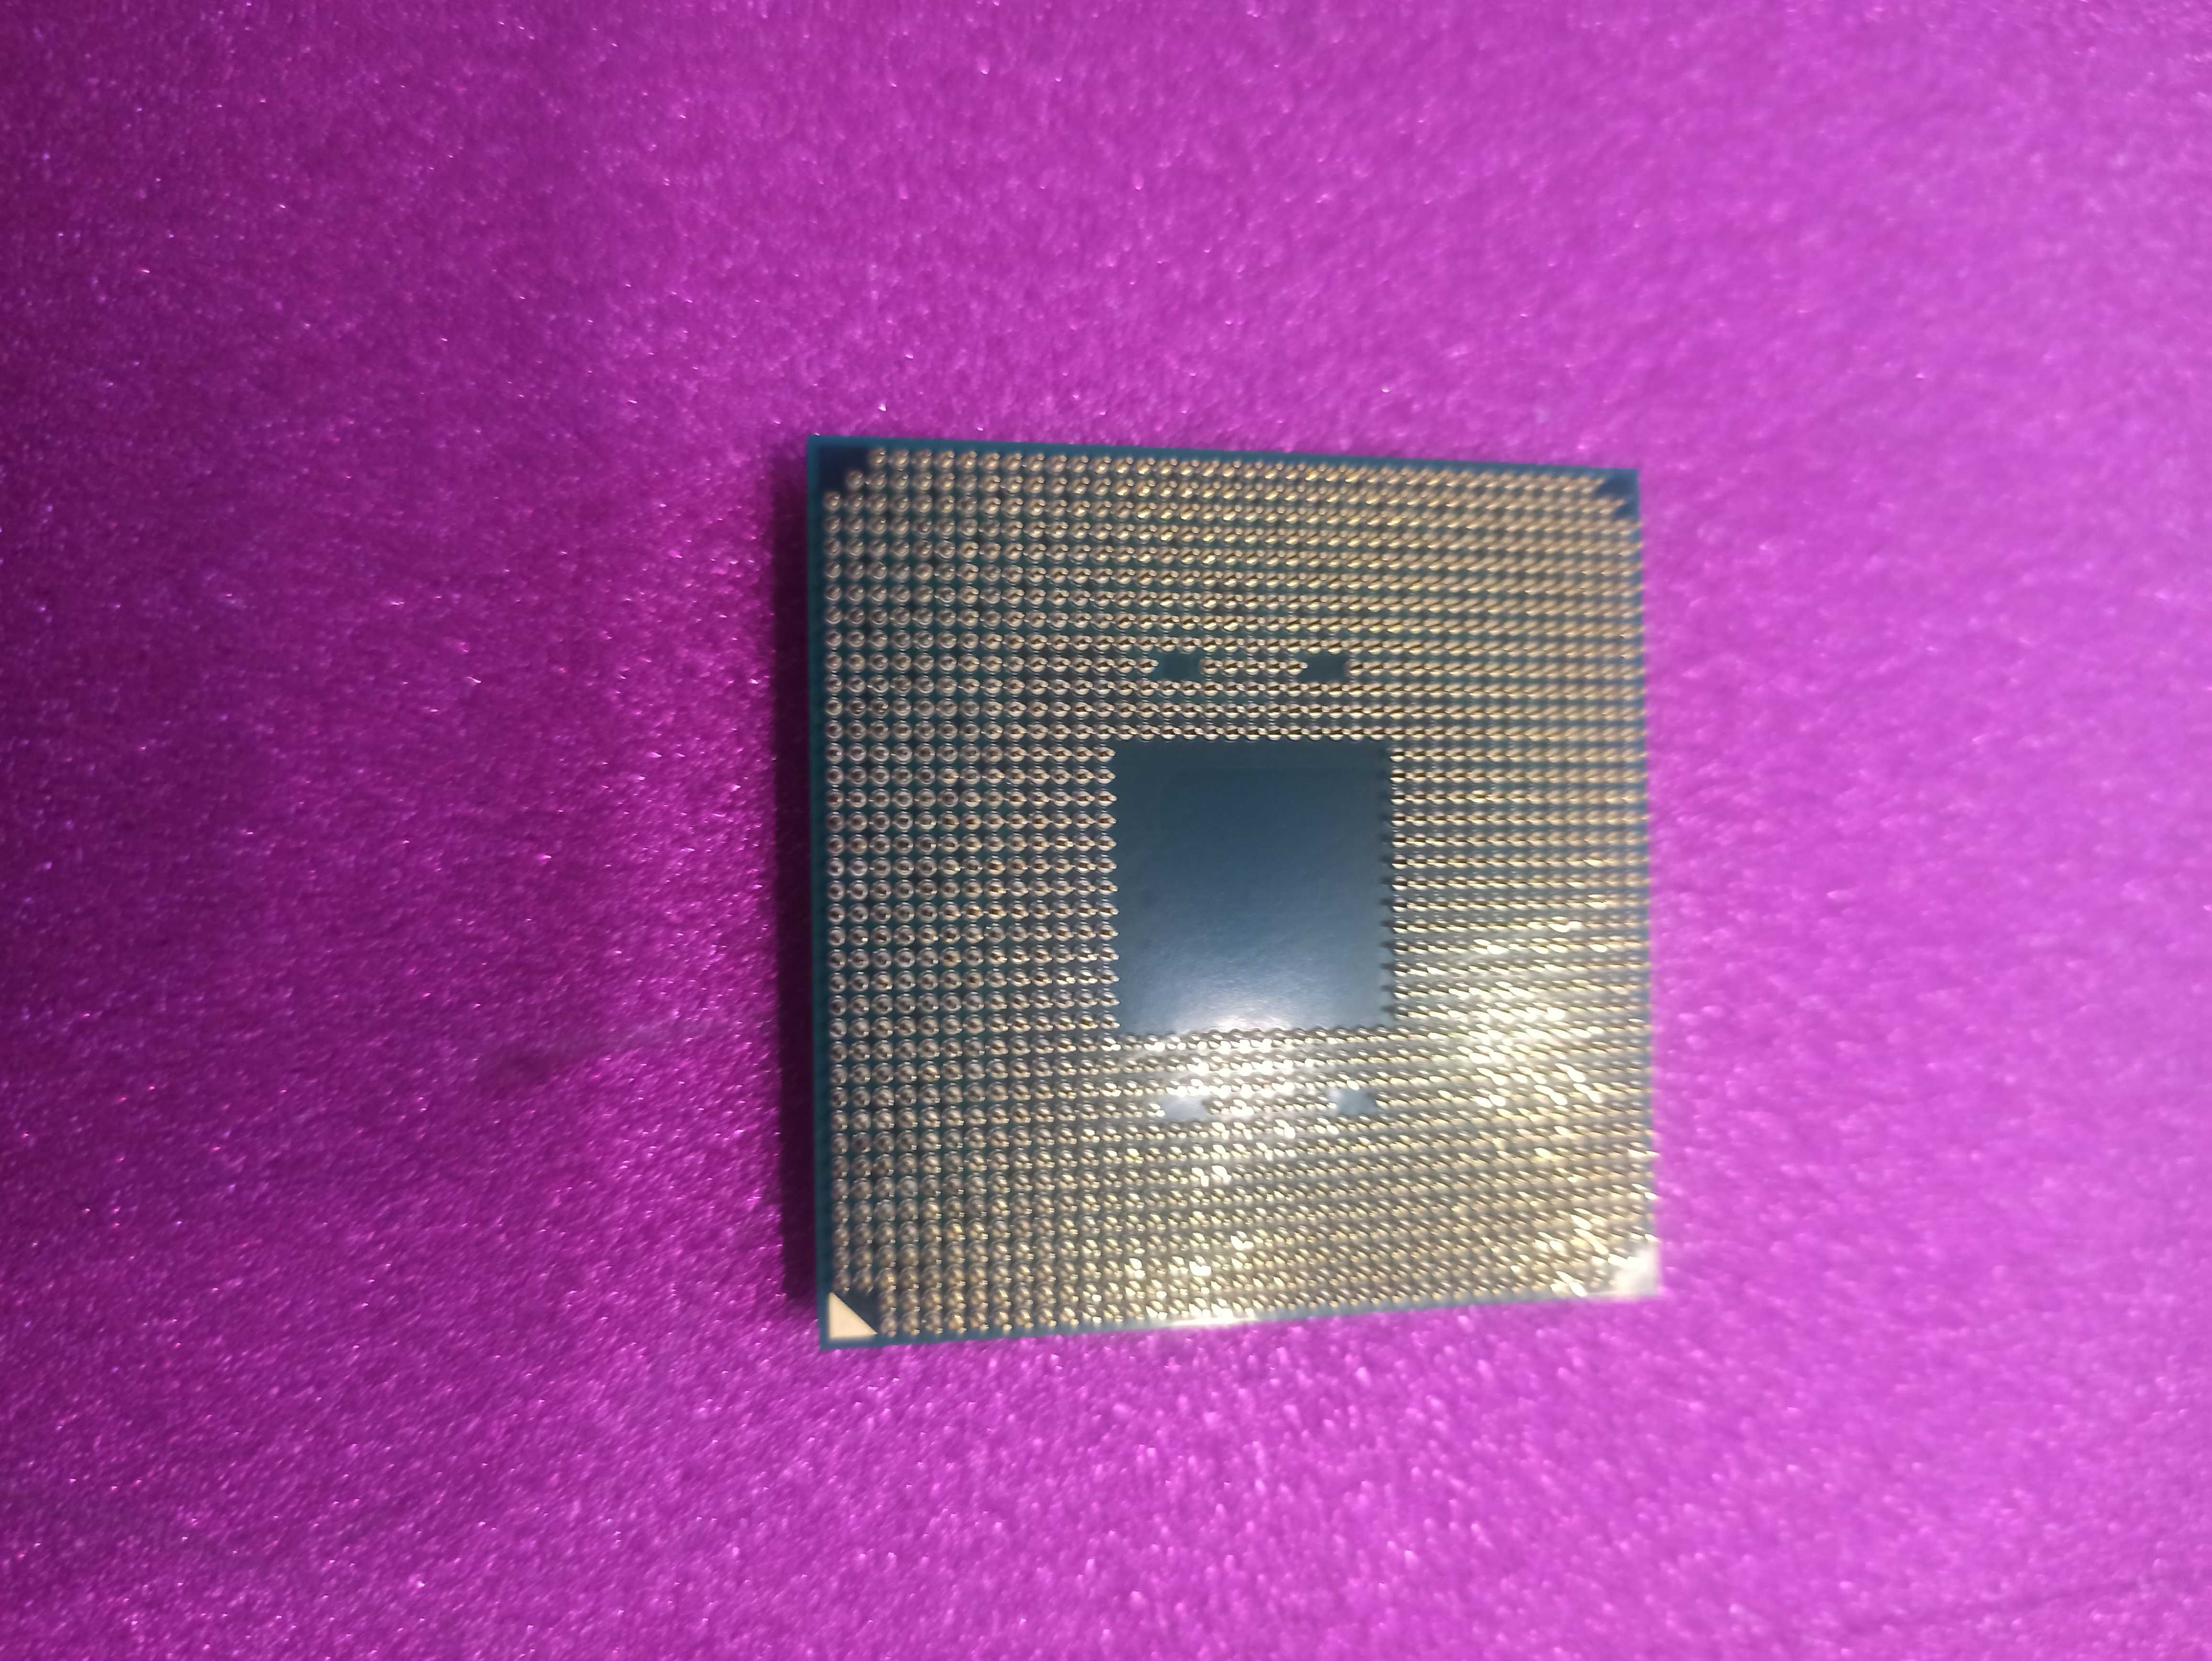 Процесор AMD Ryzen 3 1200 (YD1200BBM4KAF)